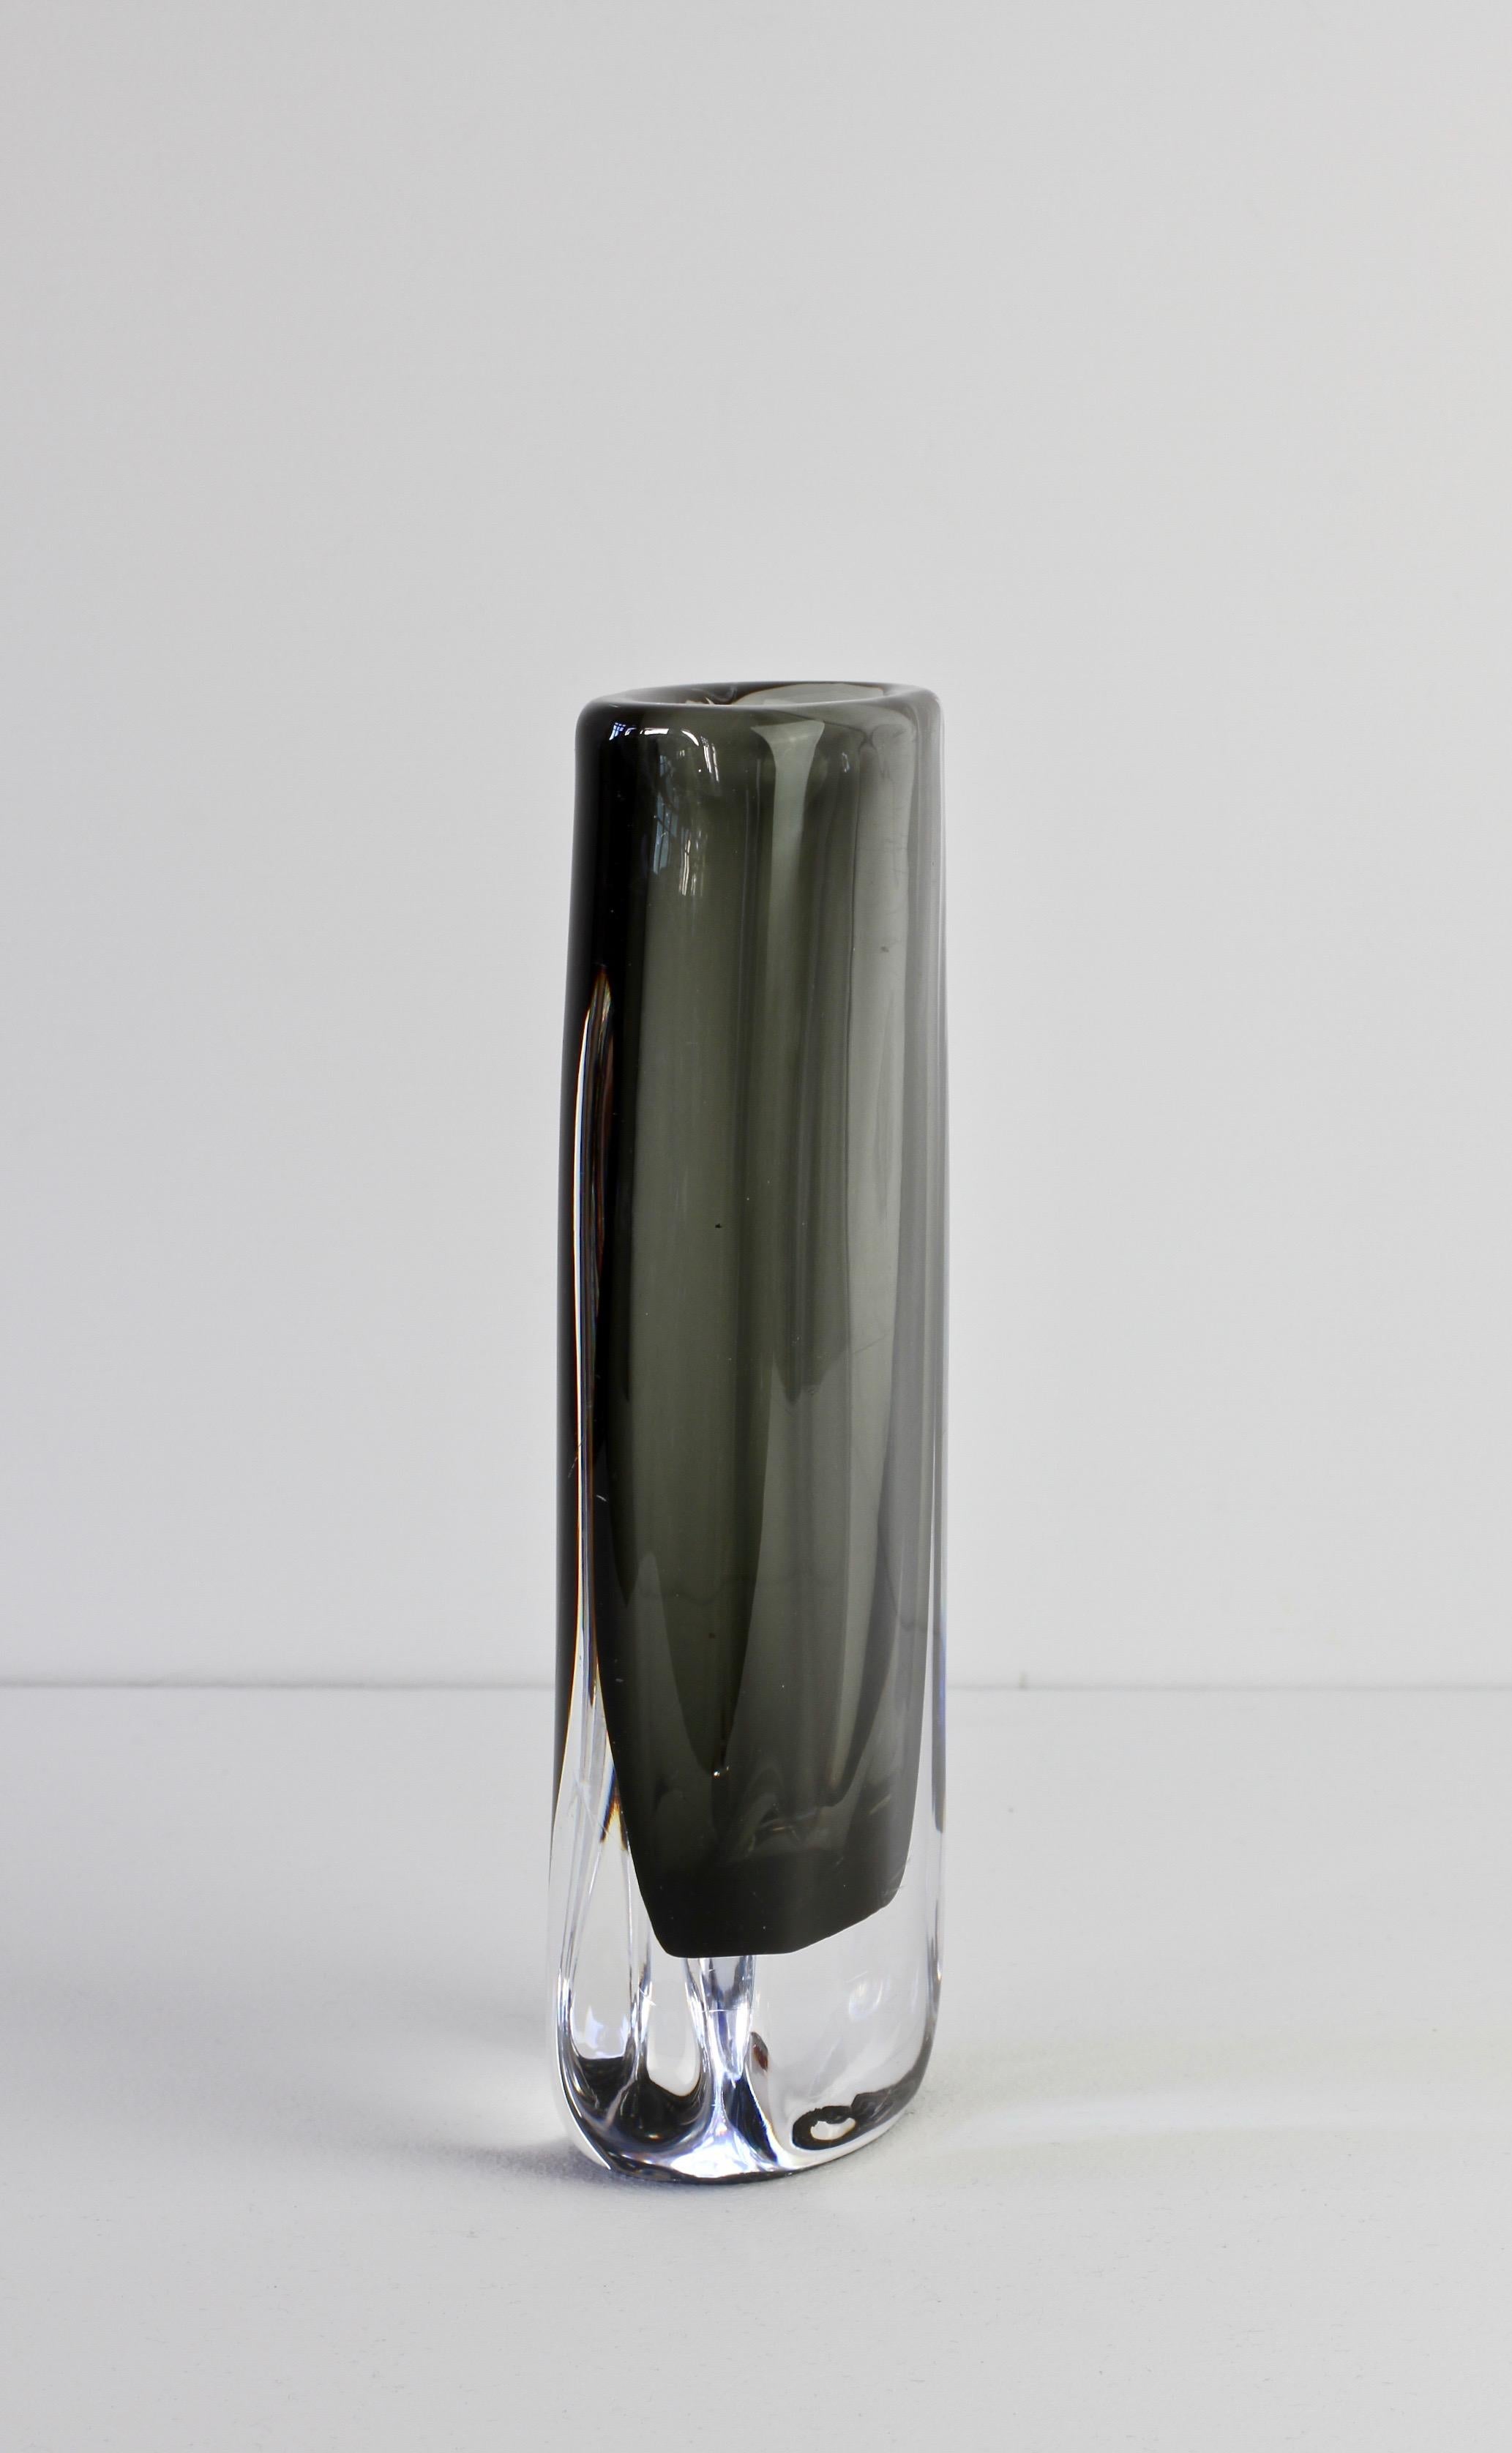 20th Century Tall 1950s Sommerso 'Dusk' Vase Signed by Nils Landberg for Orrefors Glass